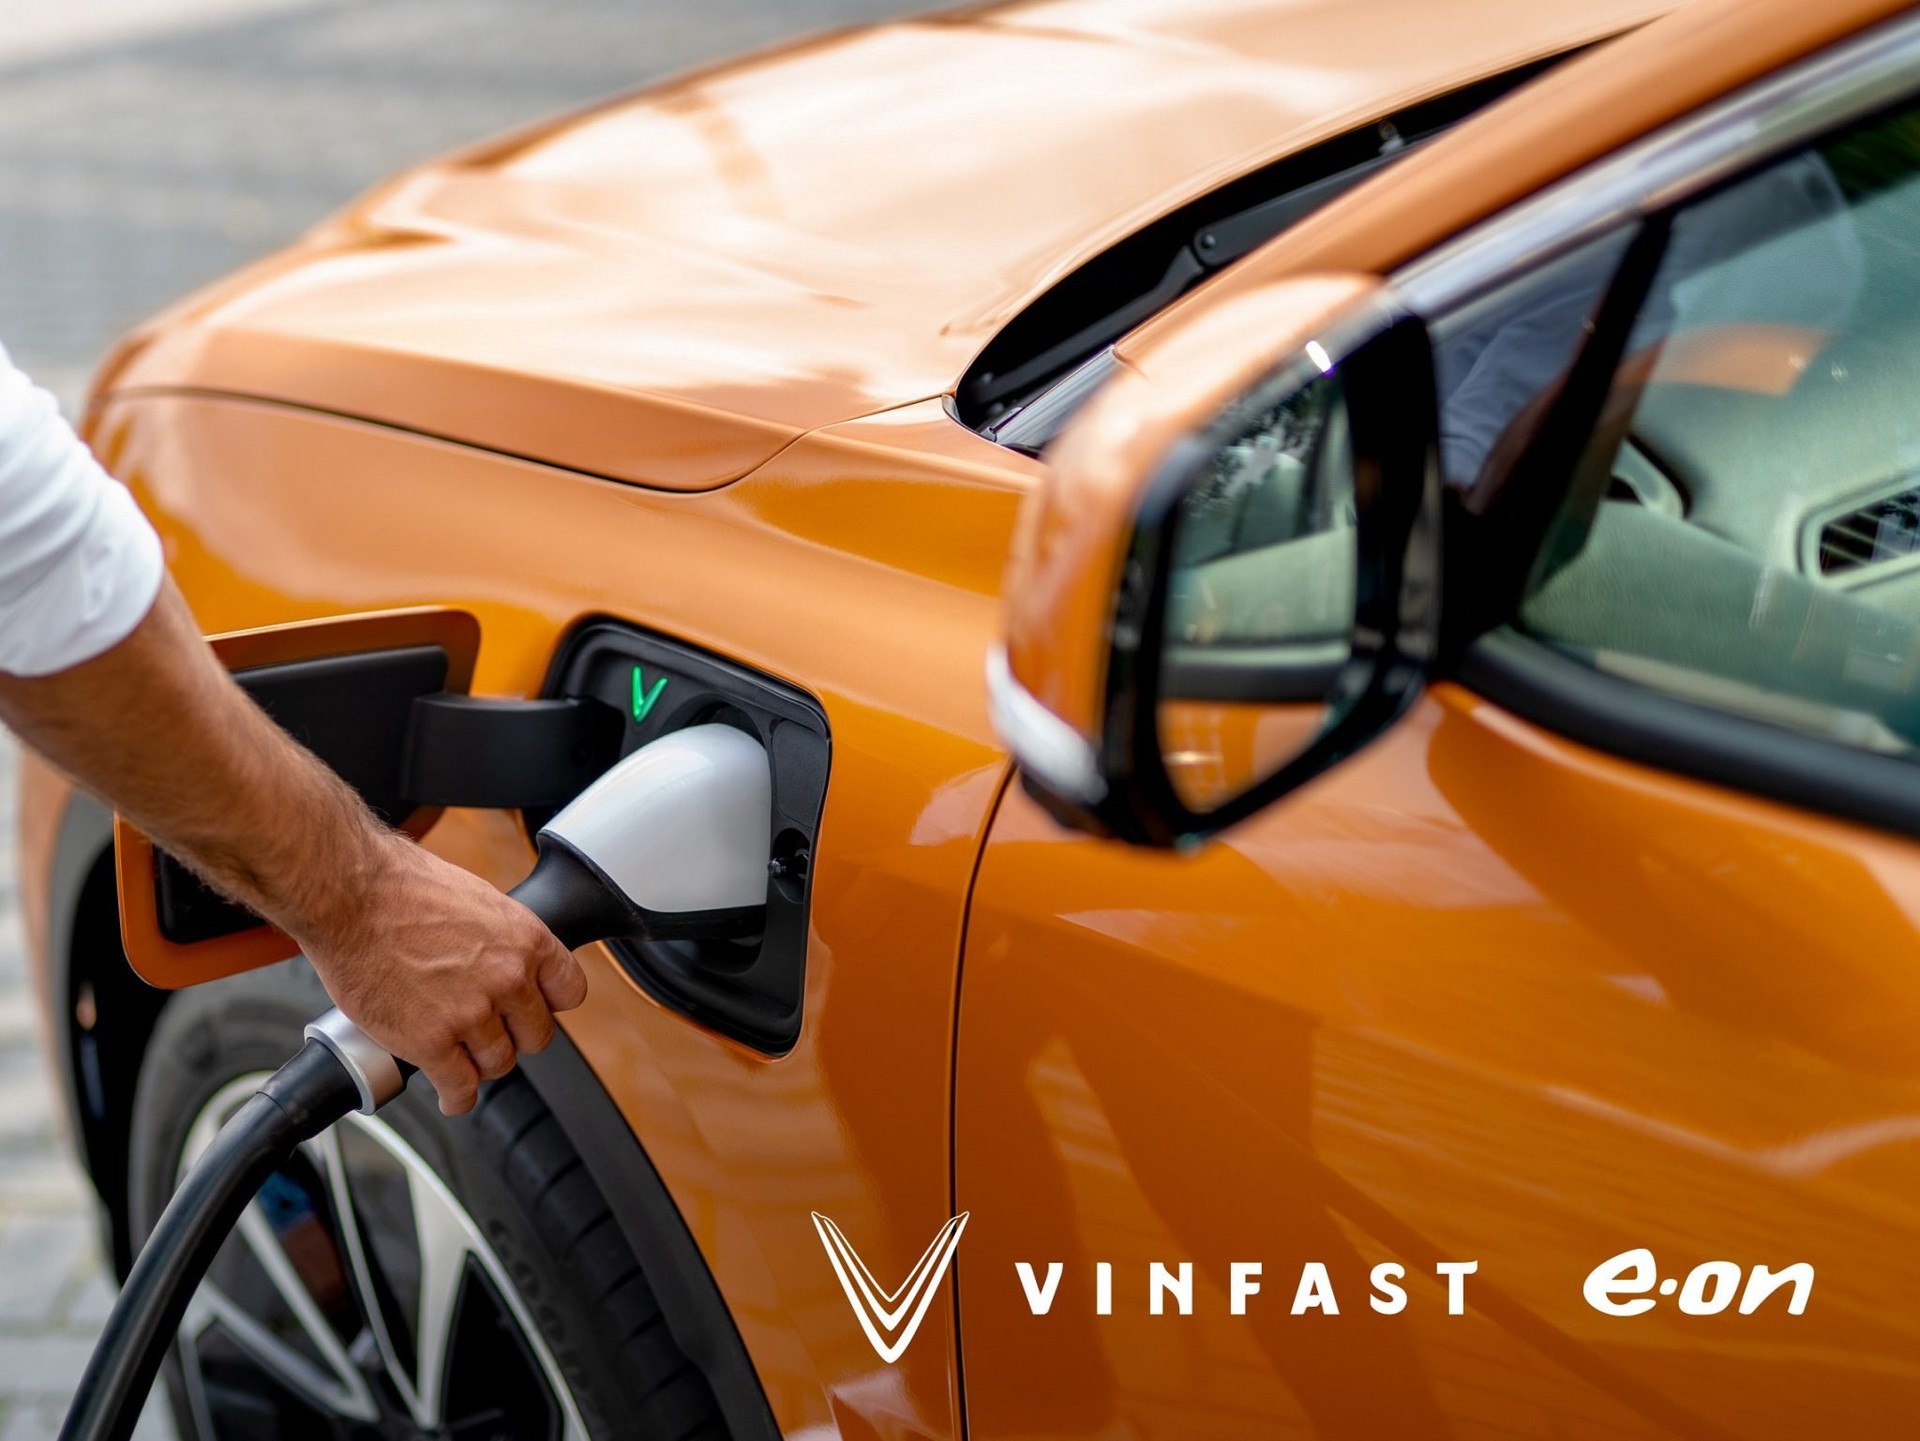 VinFast hợp tác với E.On Drive lắp đặt 200 cổng sạc tại các showroom ở châu Âu - Ảnh 1.